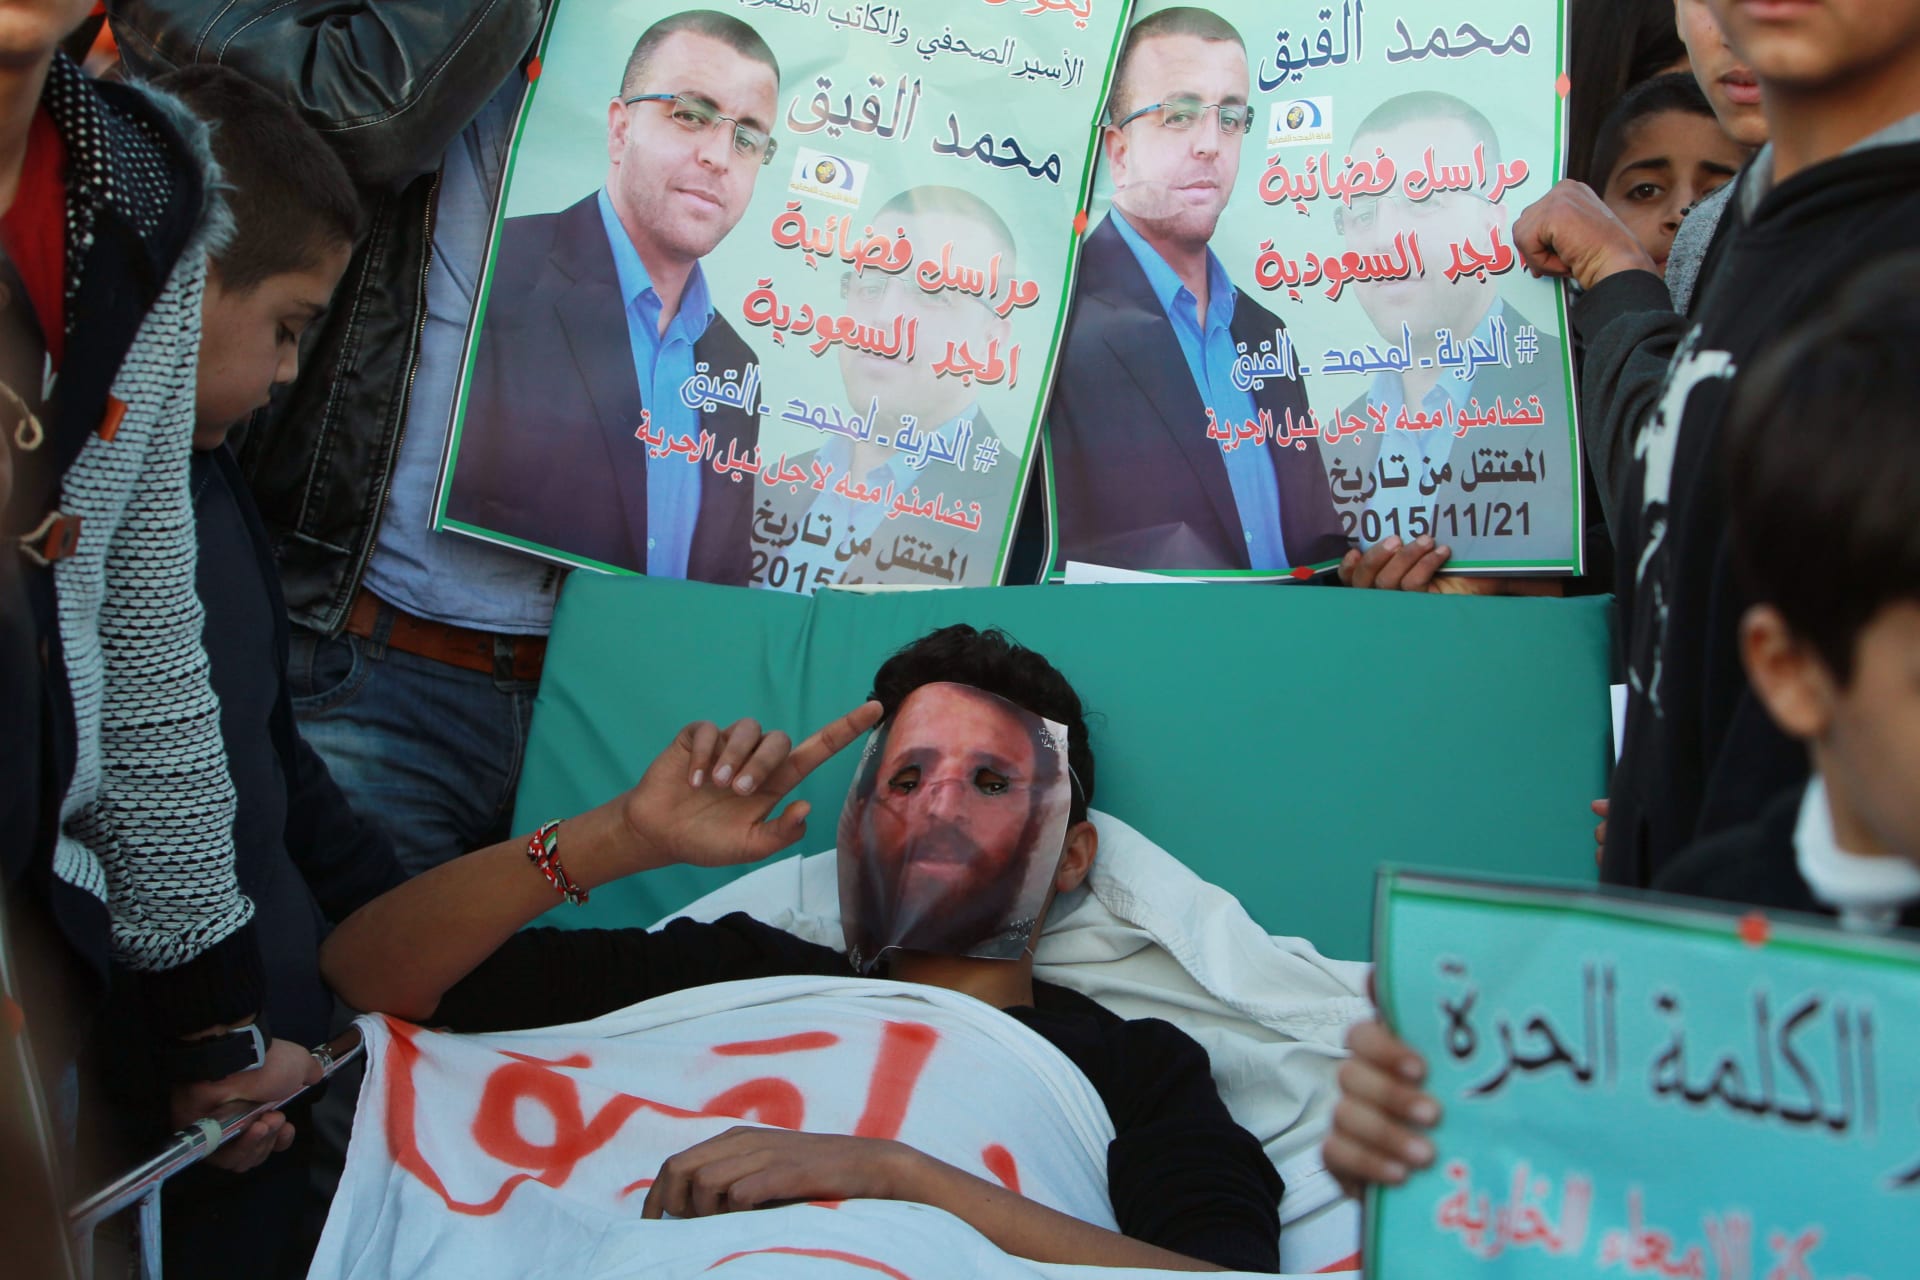 عناصر "حماس" بالسجون الإسرائيلية يعلنون الاضراب عن الطعام تضامنا مع القيق